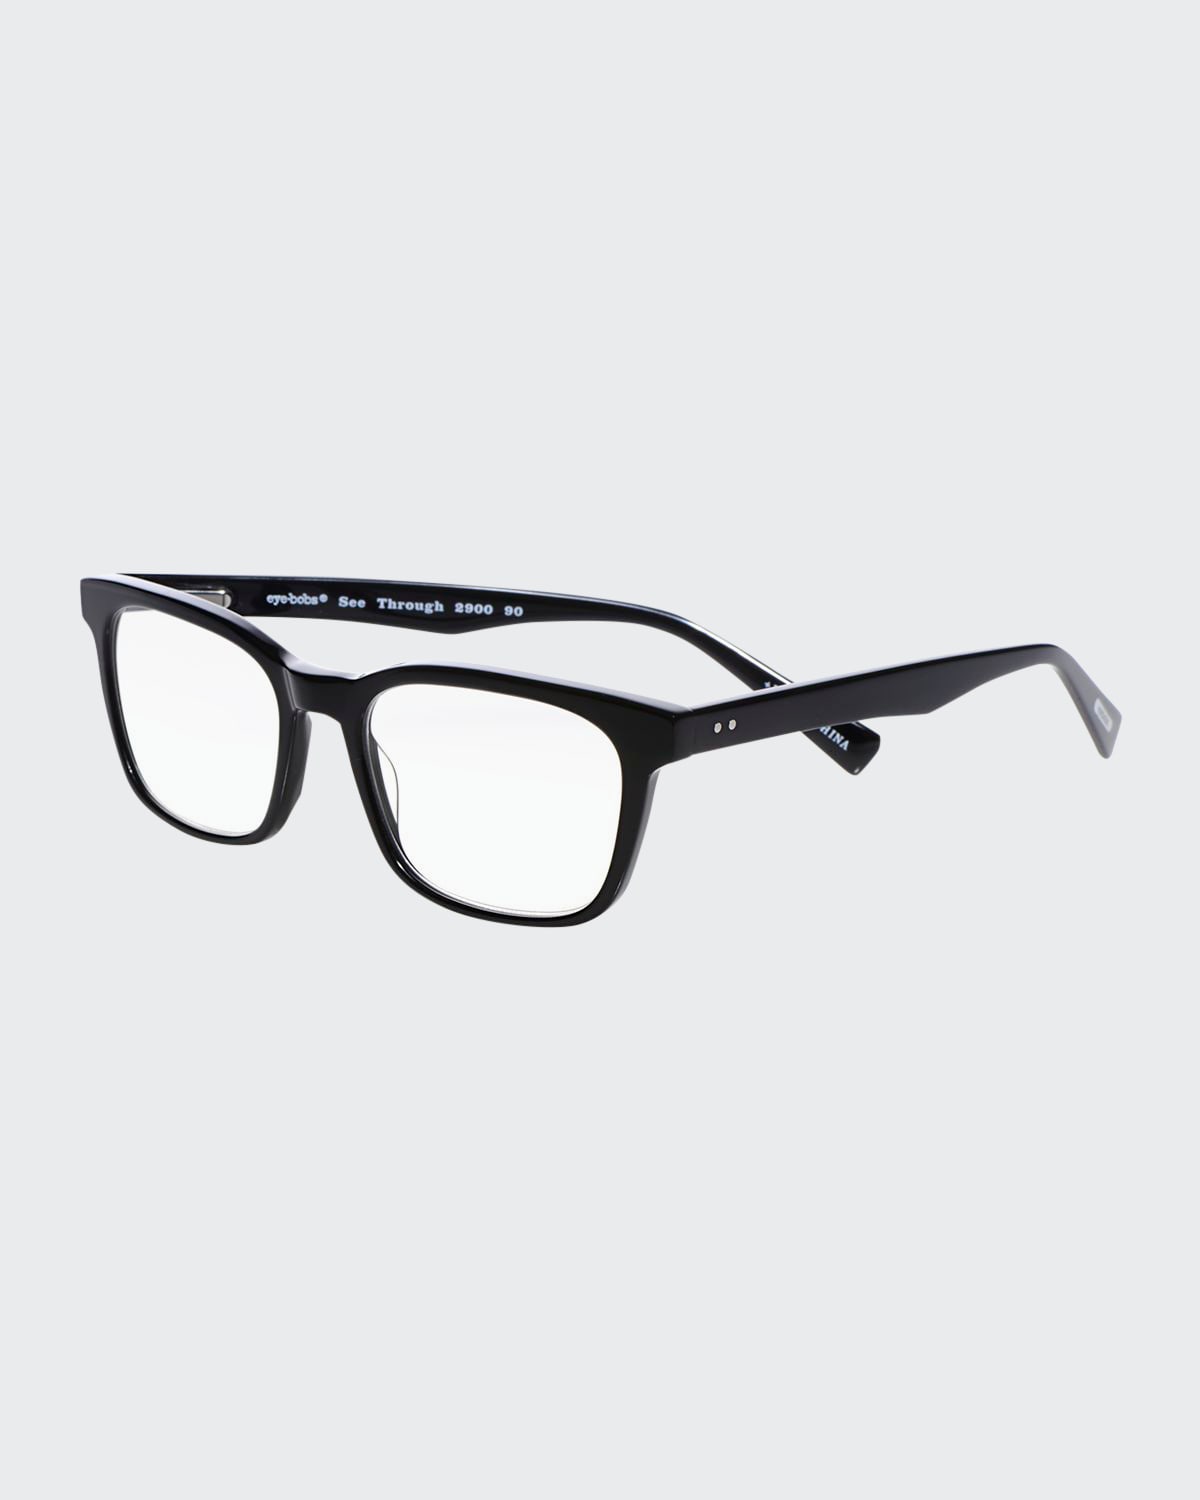 Eyebobs C Through Square Acetate Reading Glasses